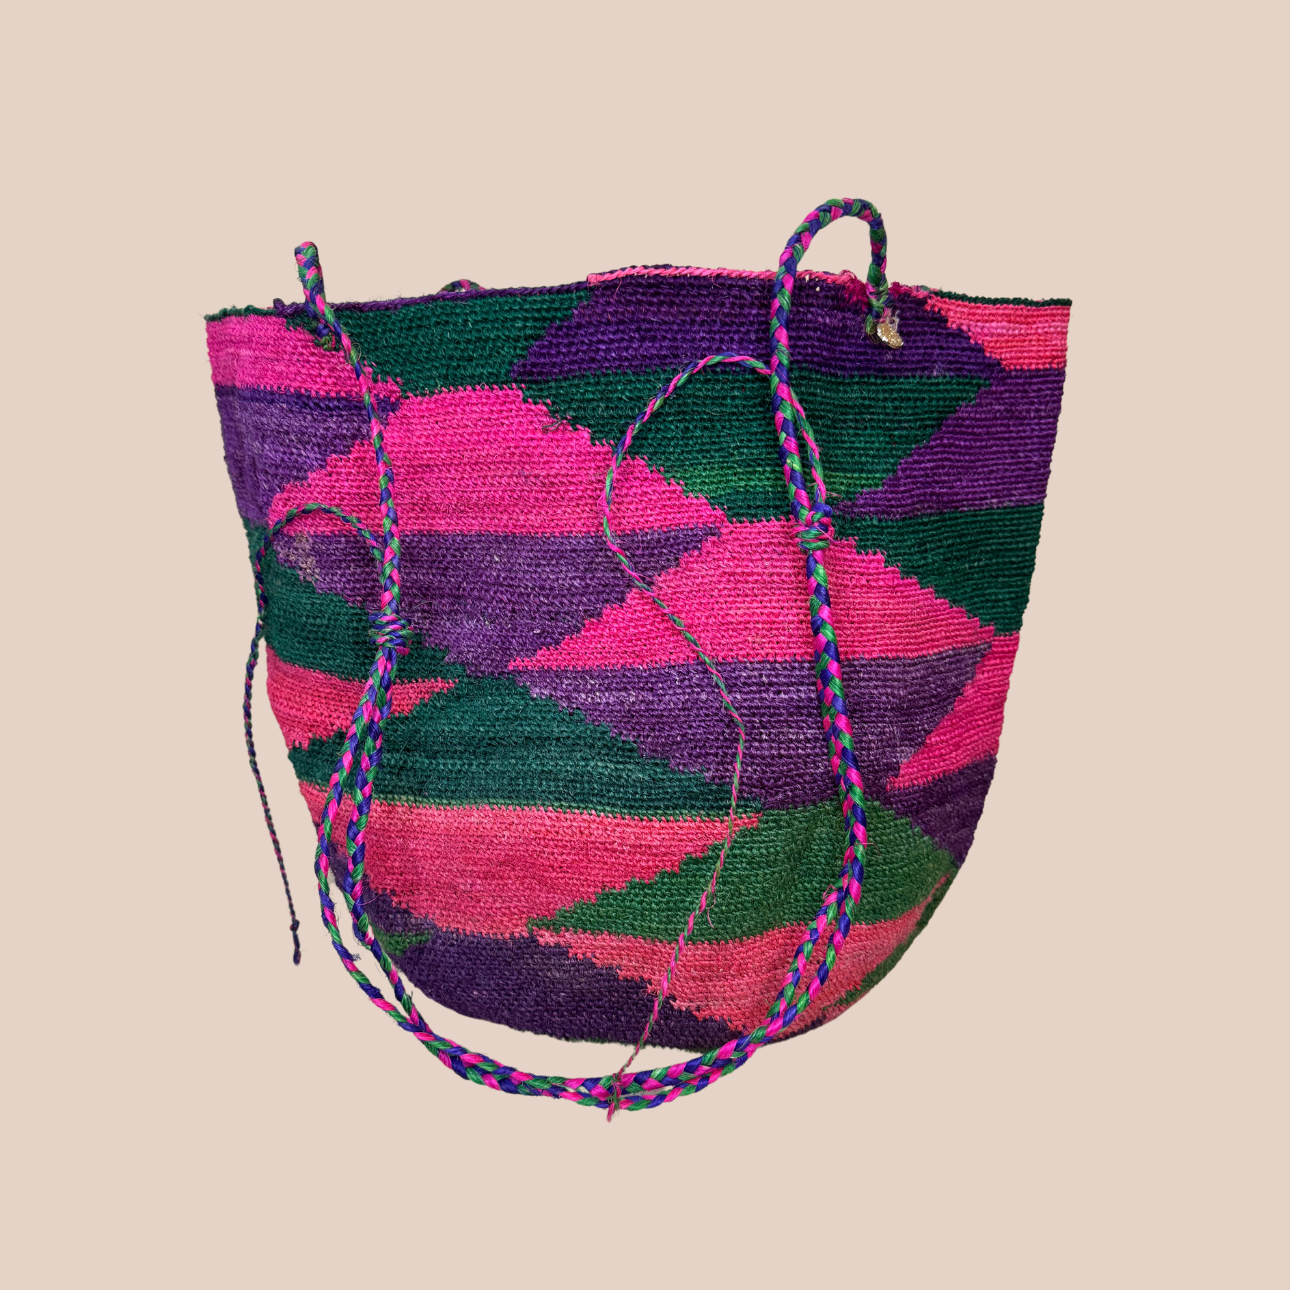  Image du sac PLAYA de Maison Badigo, sac en fibres de cactus multicolore unique et tendance